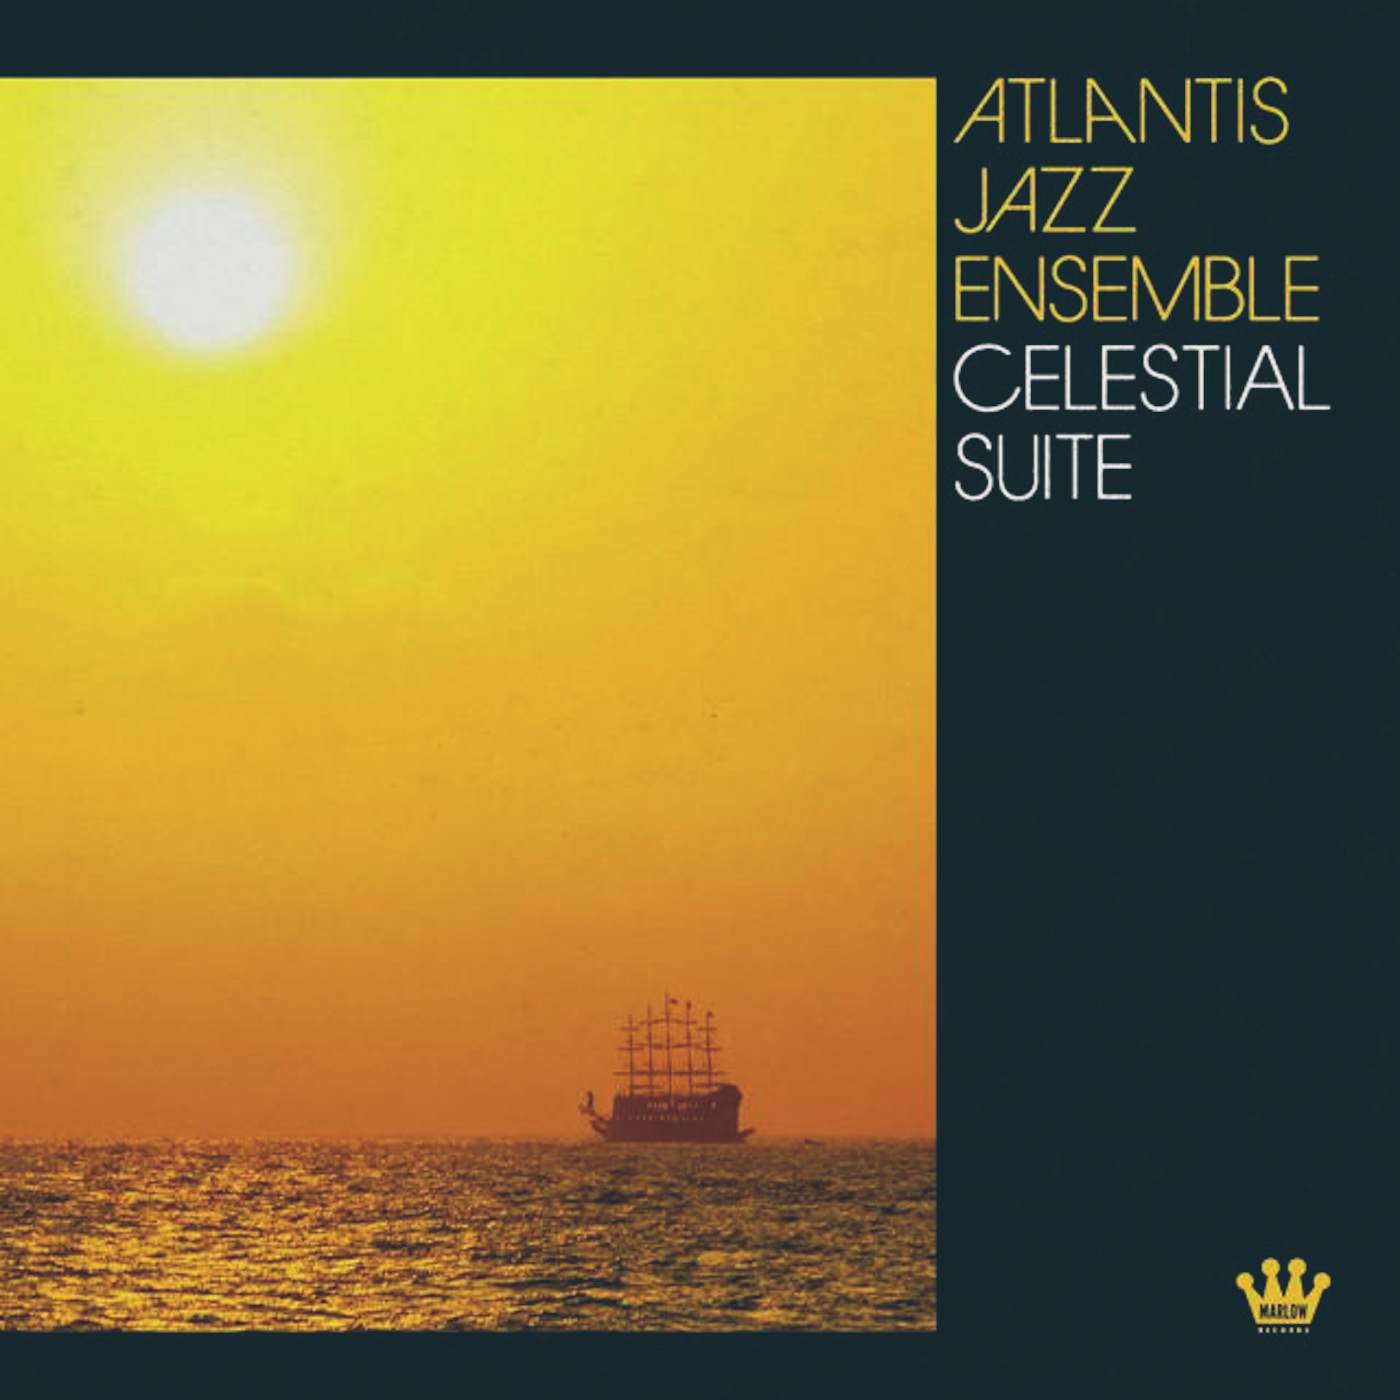 Atlantis Jazz Ensemble